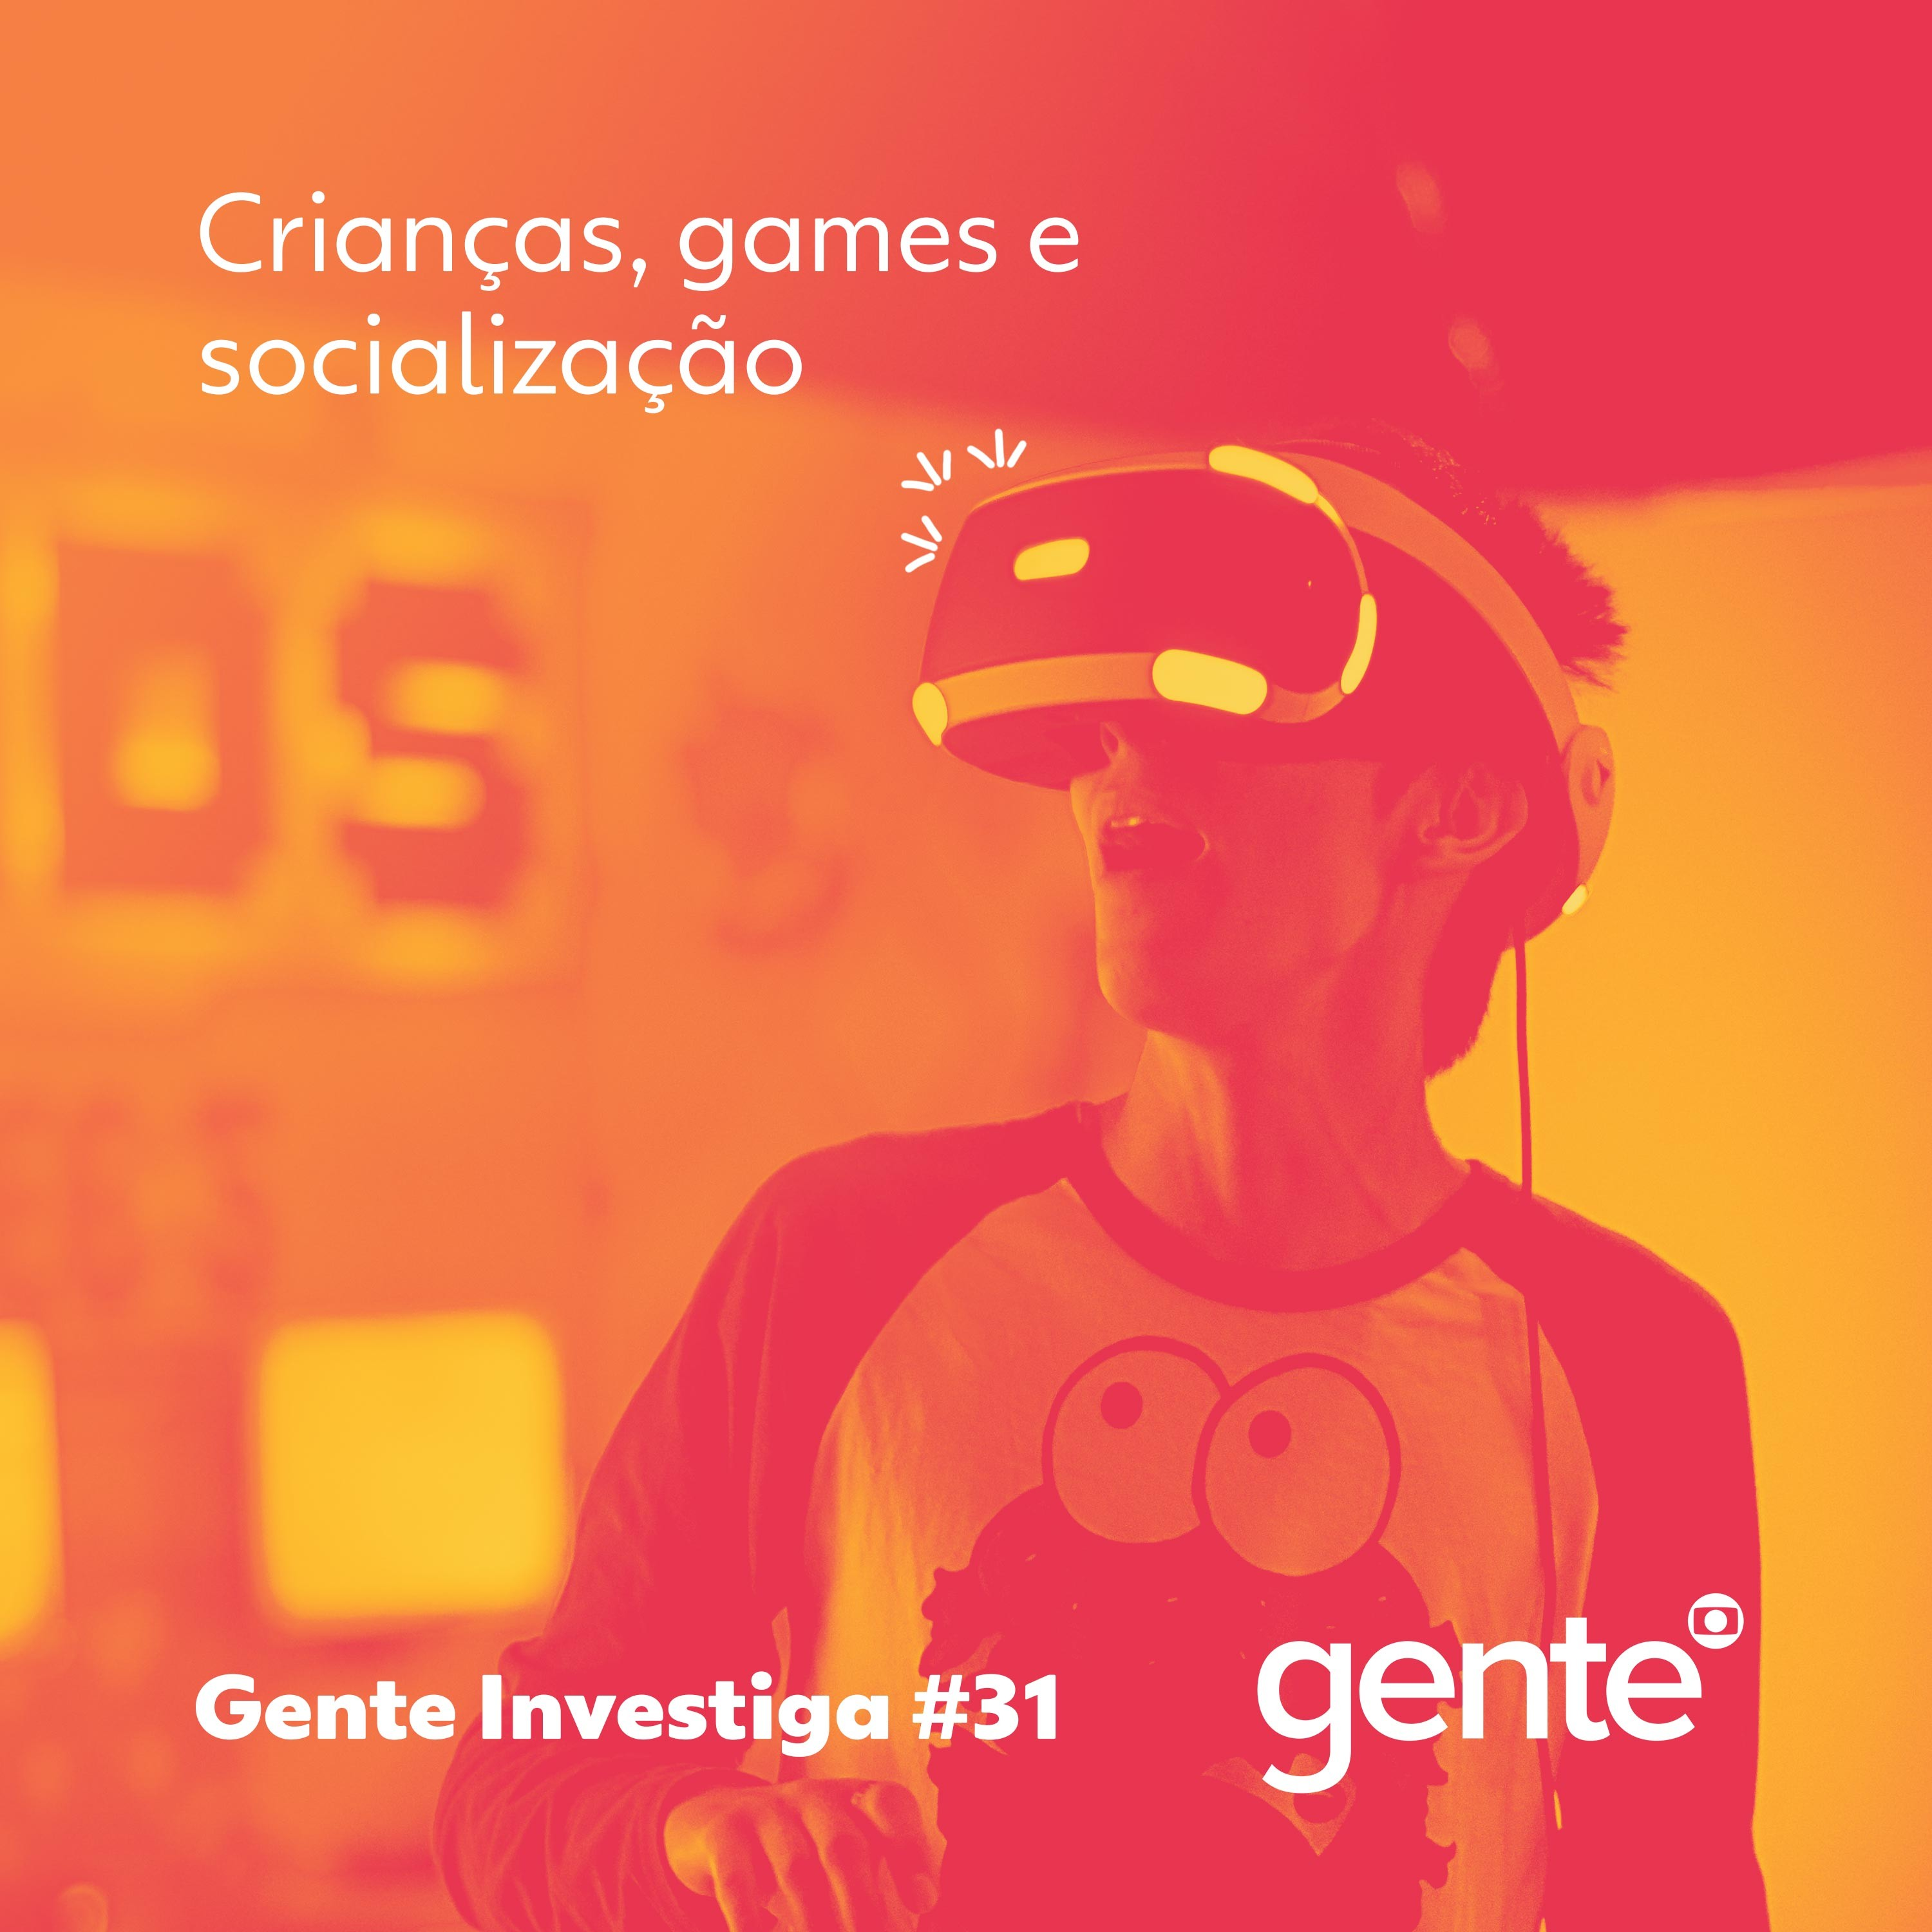 Gente Investiga #31 | Crianças, games e socialização